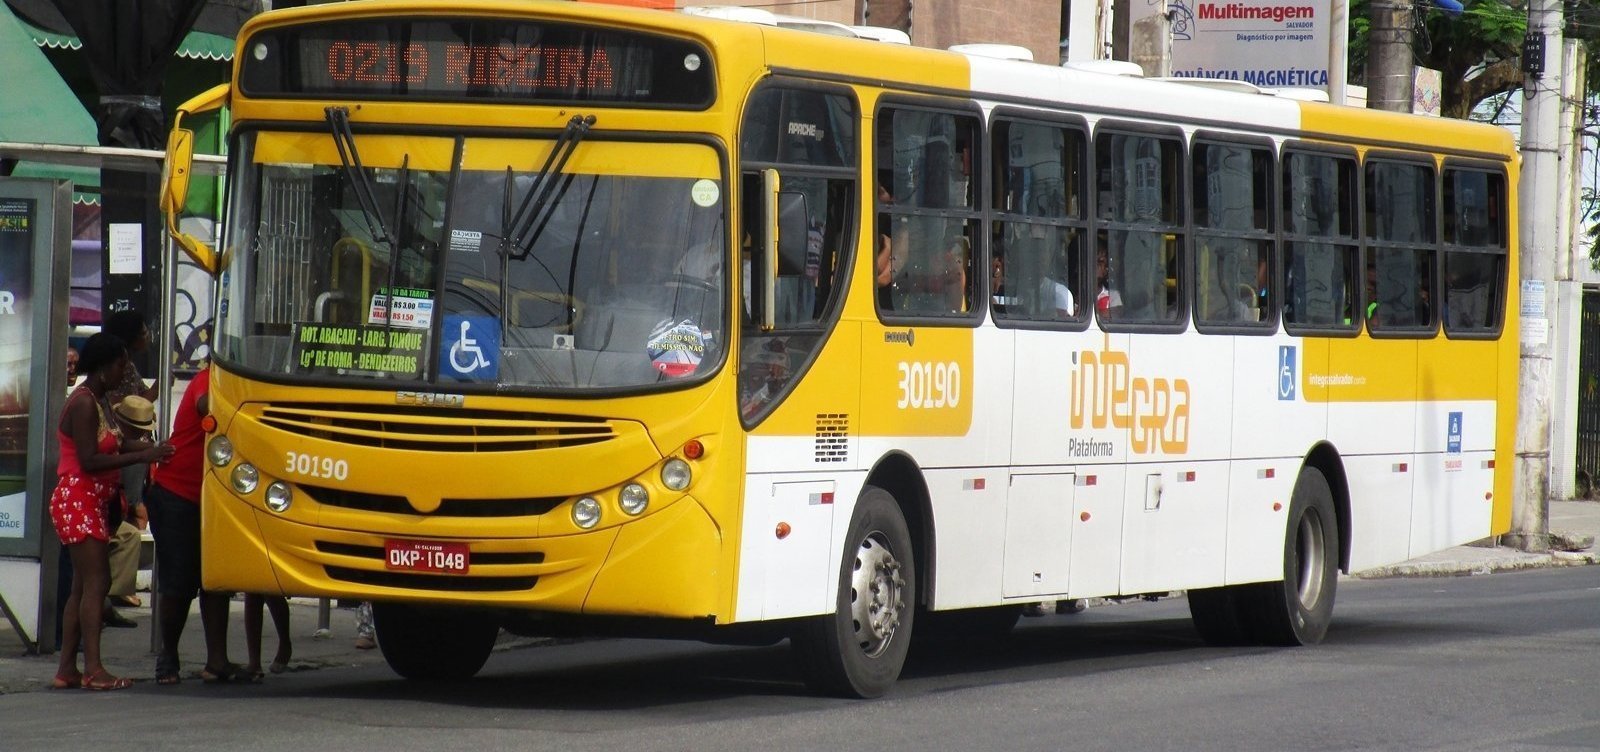 Nova tarifa de ônibus em Salvador deve ser de R$ 4,20 em 2020; data segue indefinida